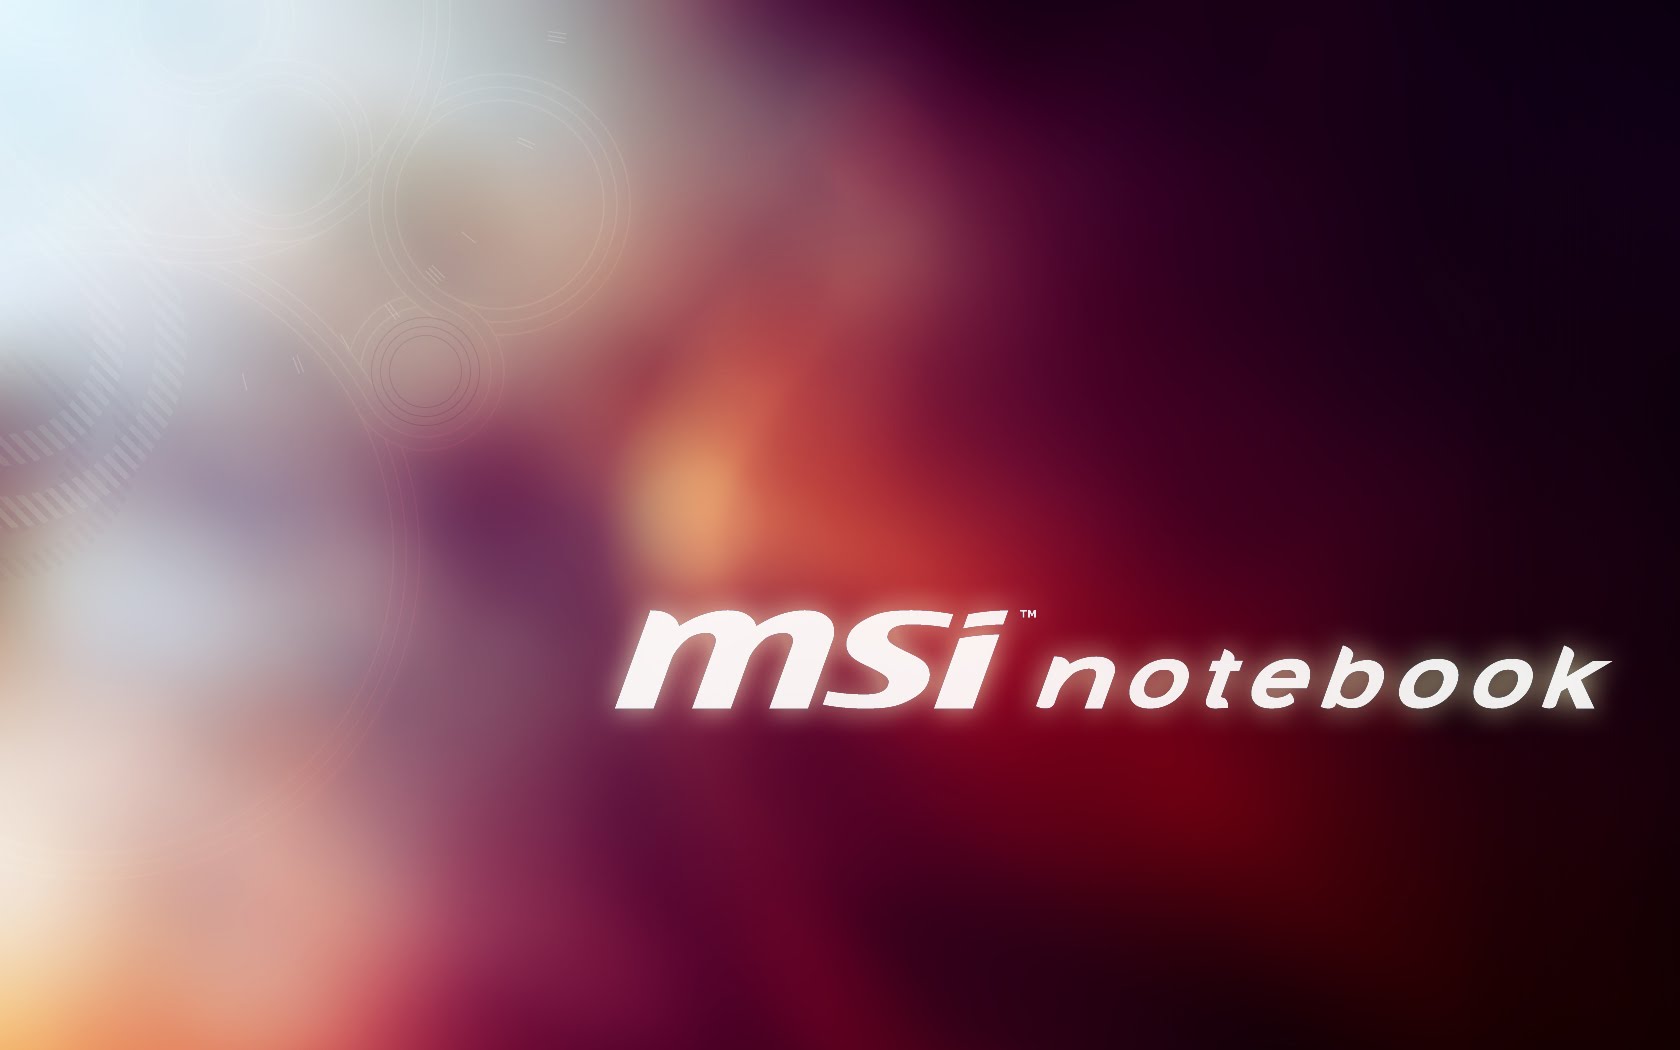 Msi Notebook Wallpaper Notebookre